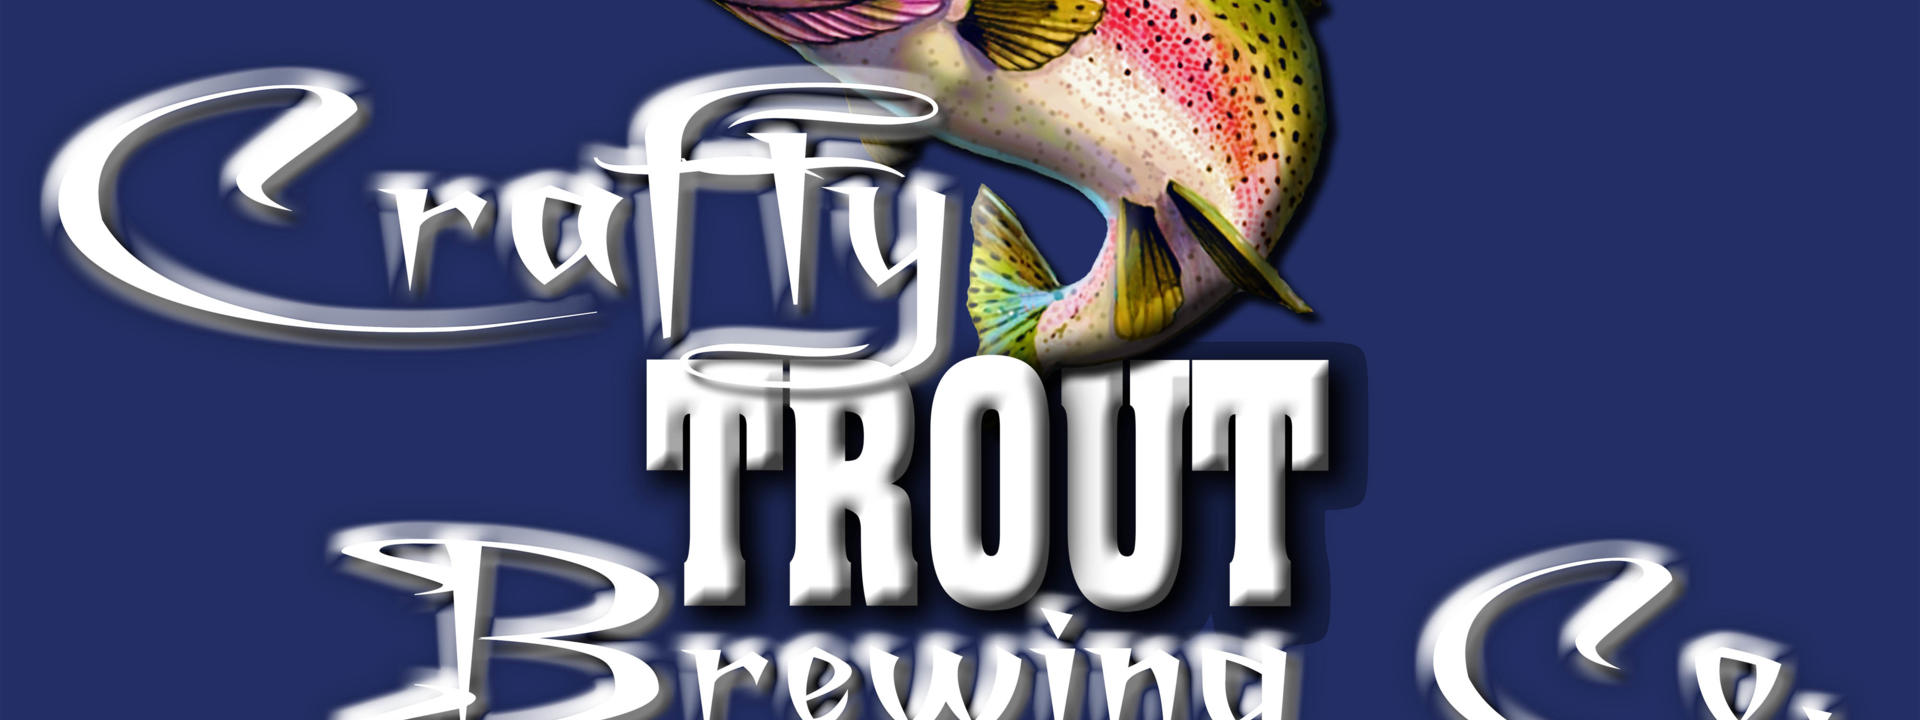 Crafty Trout Logo 4